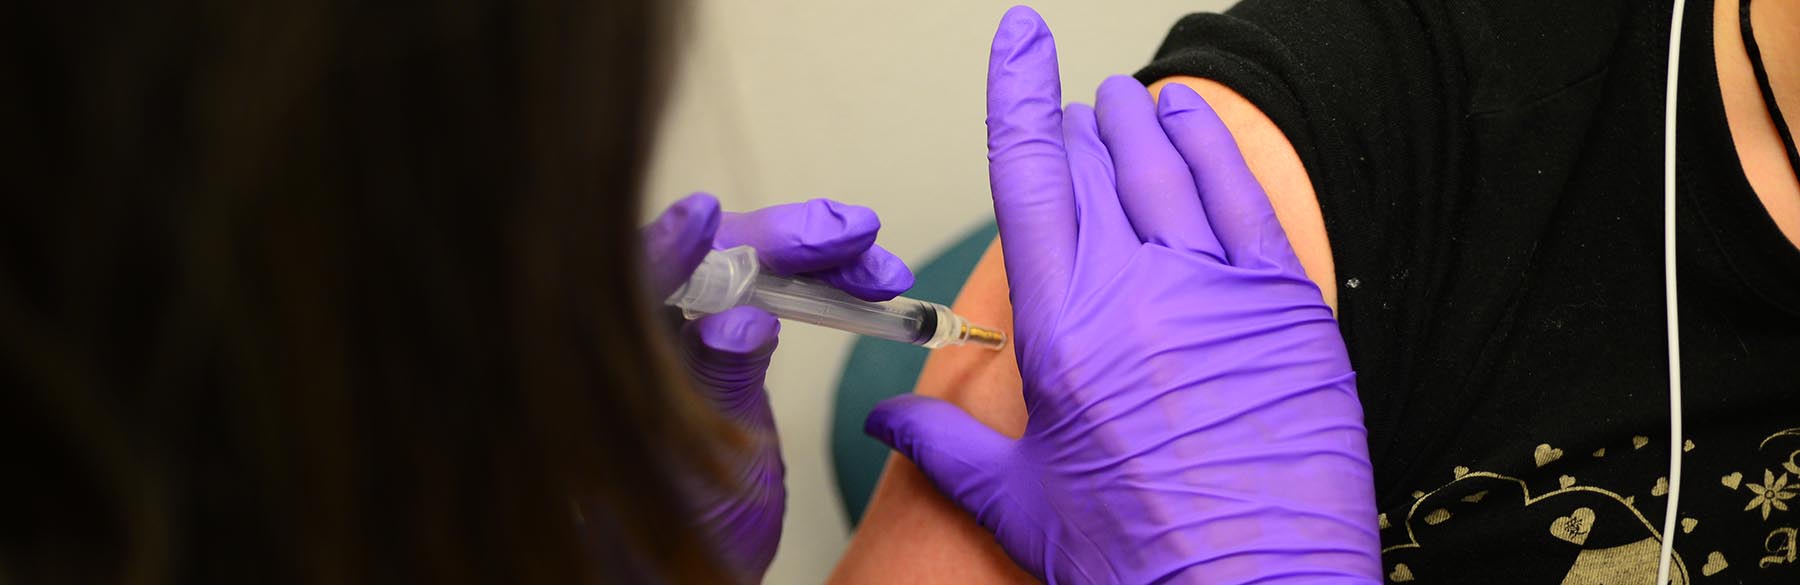 एक मरीज को वैक्सीन शॉट देने वाला प्रदाता